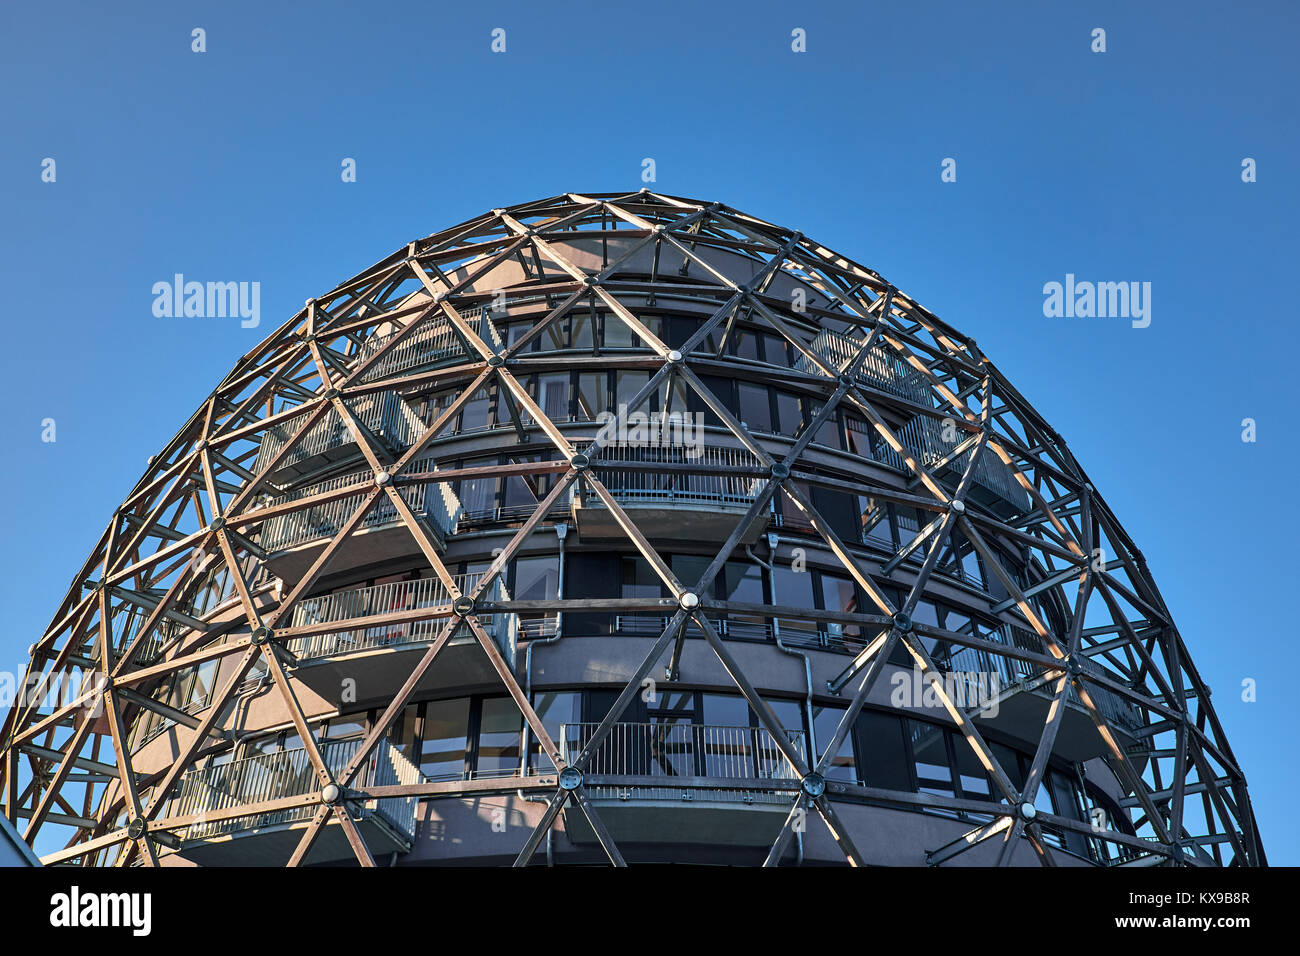 WINTERBERG, Germania - 14 febbraio 2017: la parte superiore di una architettura a forma di cupola costruzione fatta di quadro in legname Foto Stock